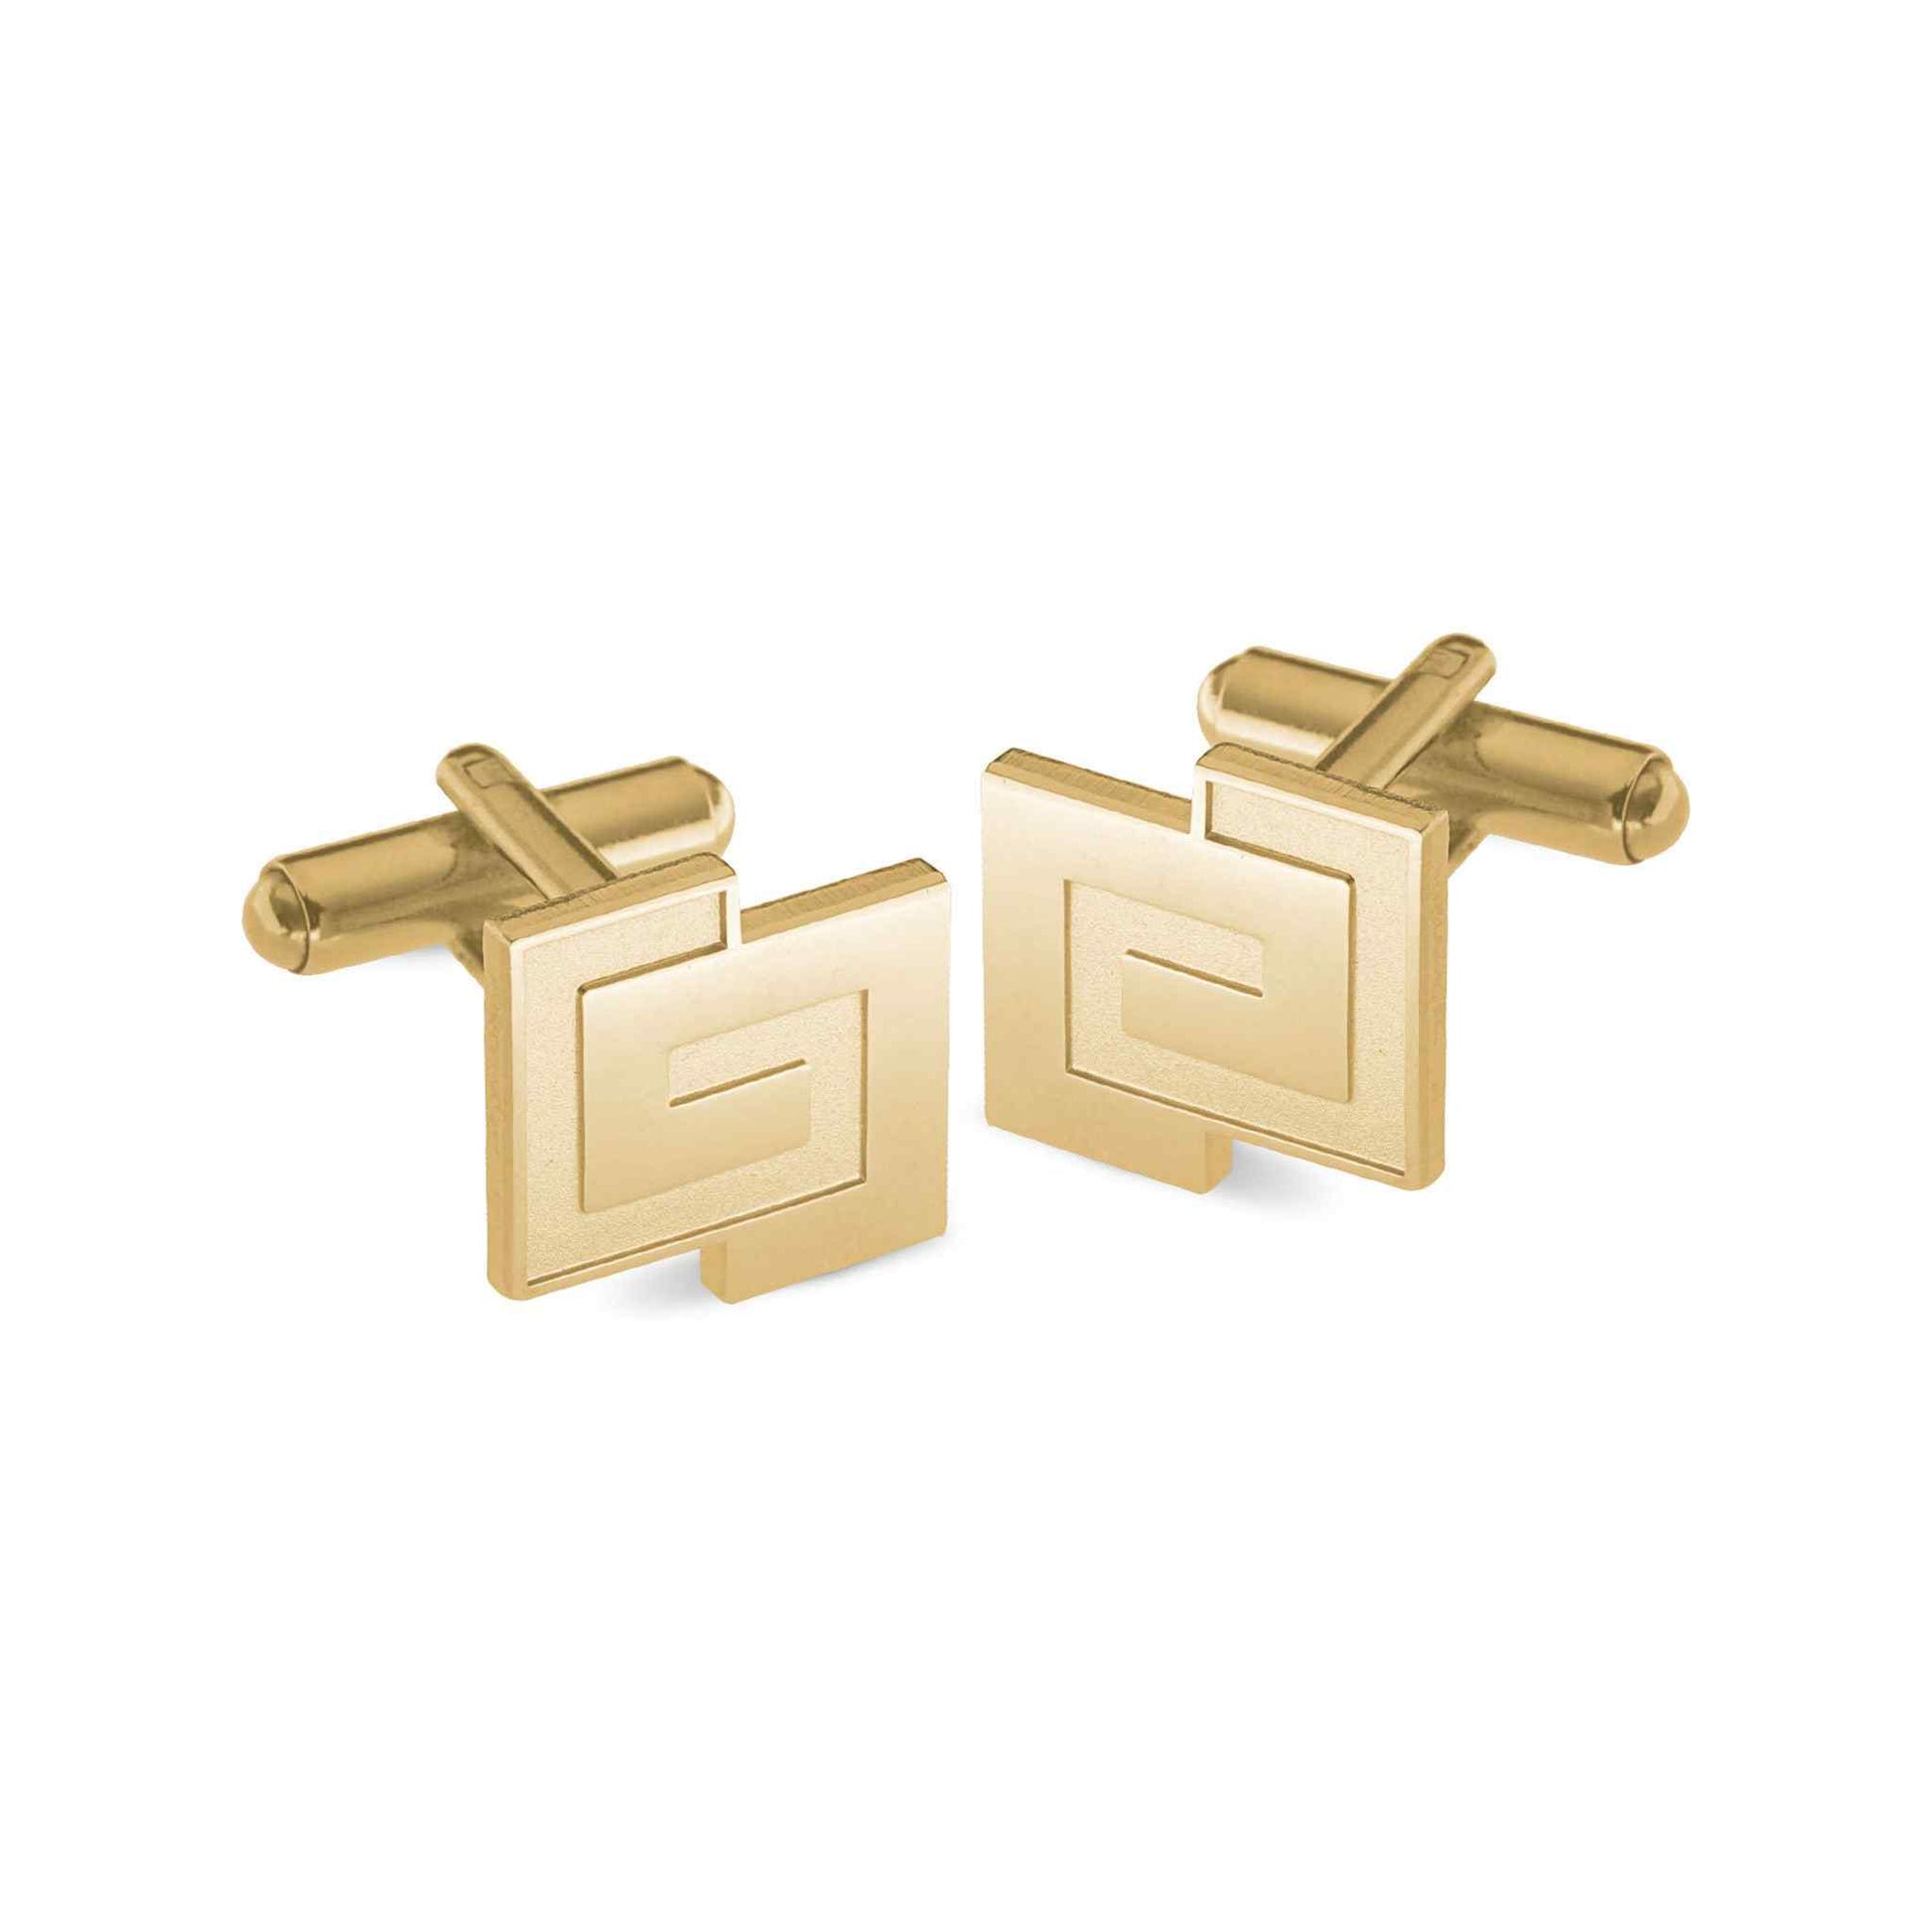 A gold interlocking pattern cufflinks displayed on a neutral white background.